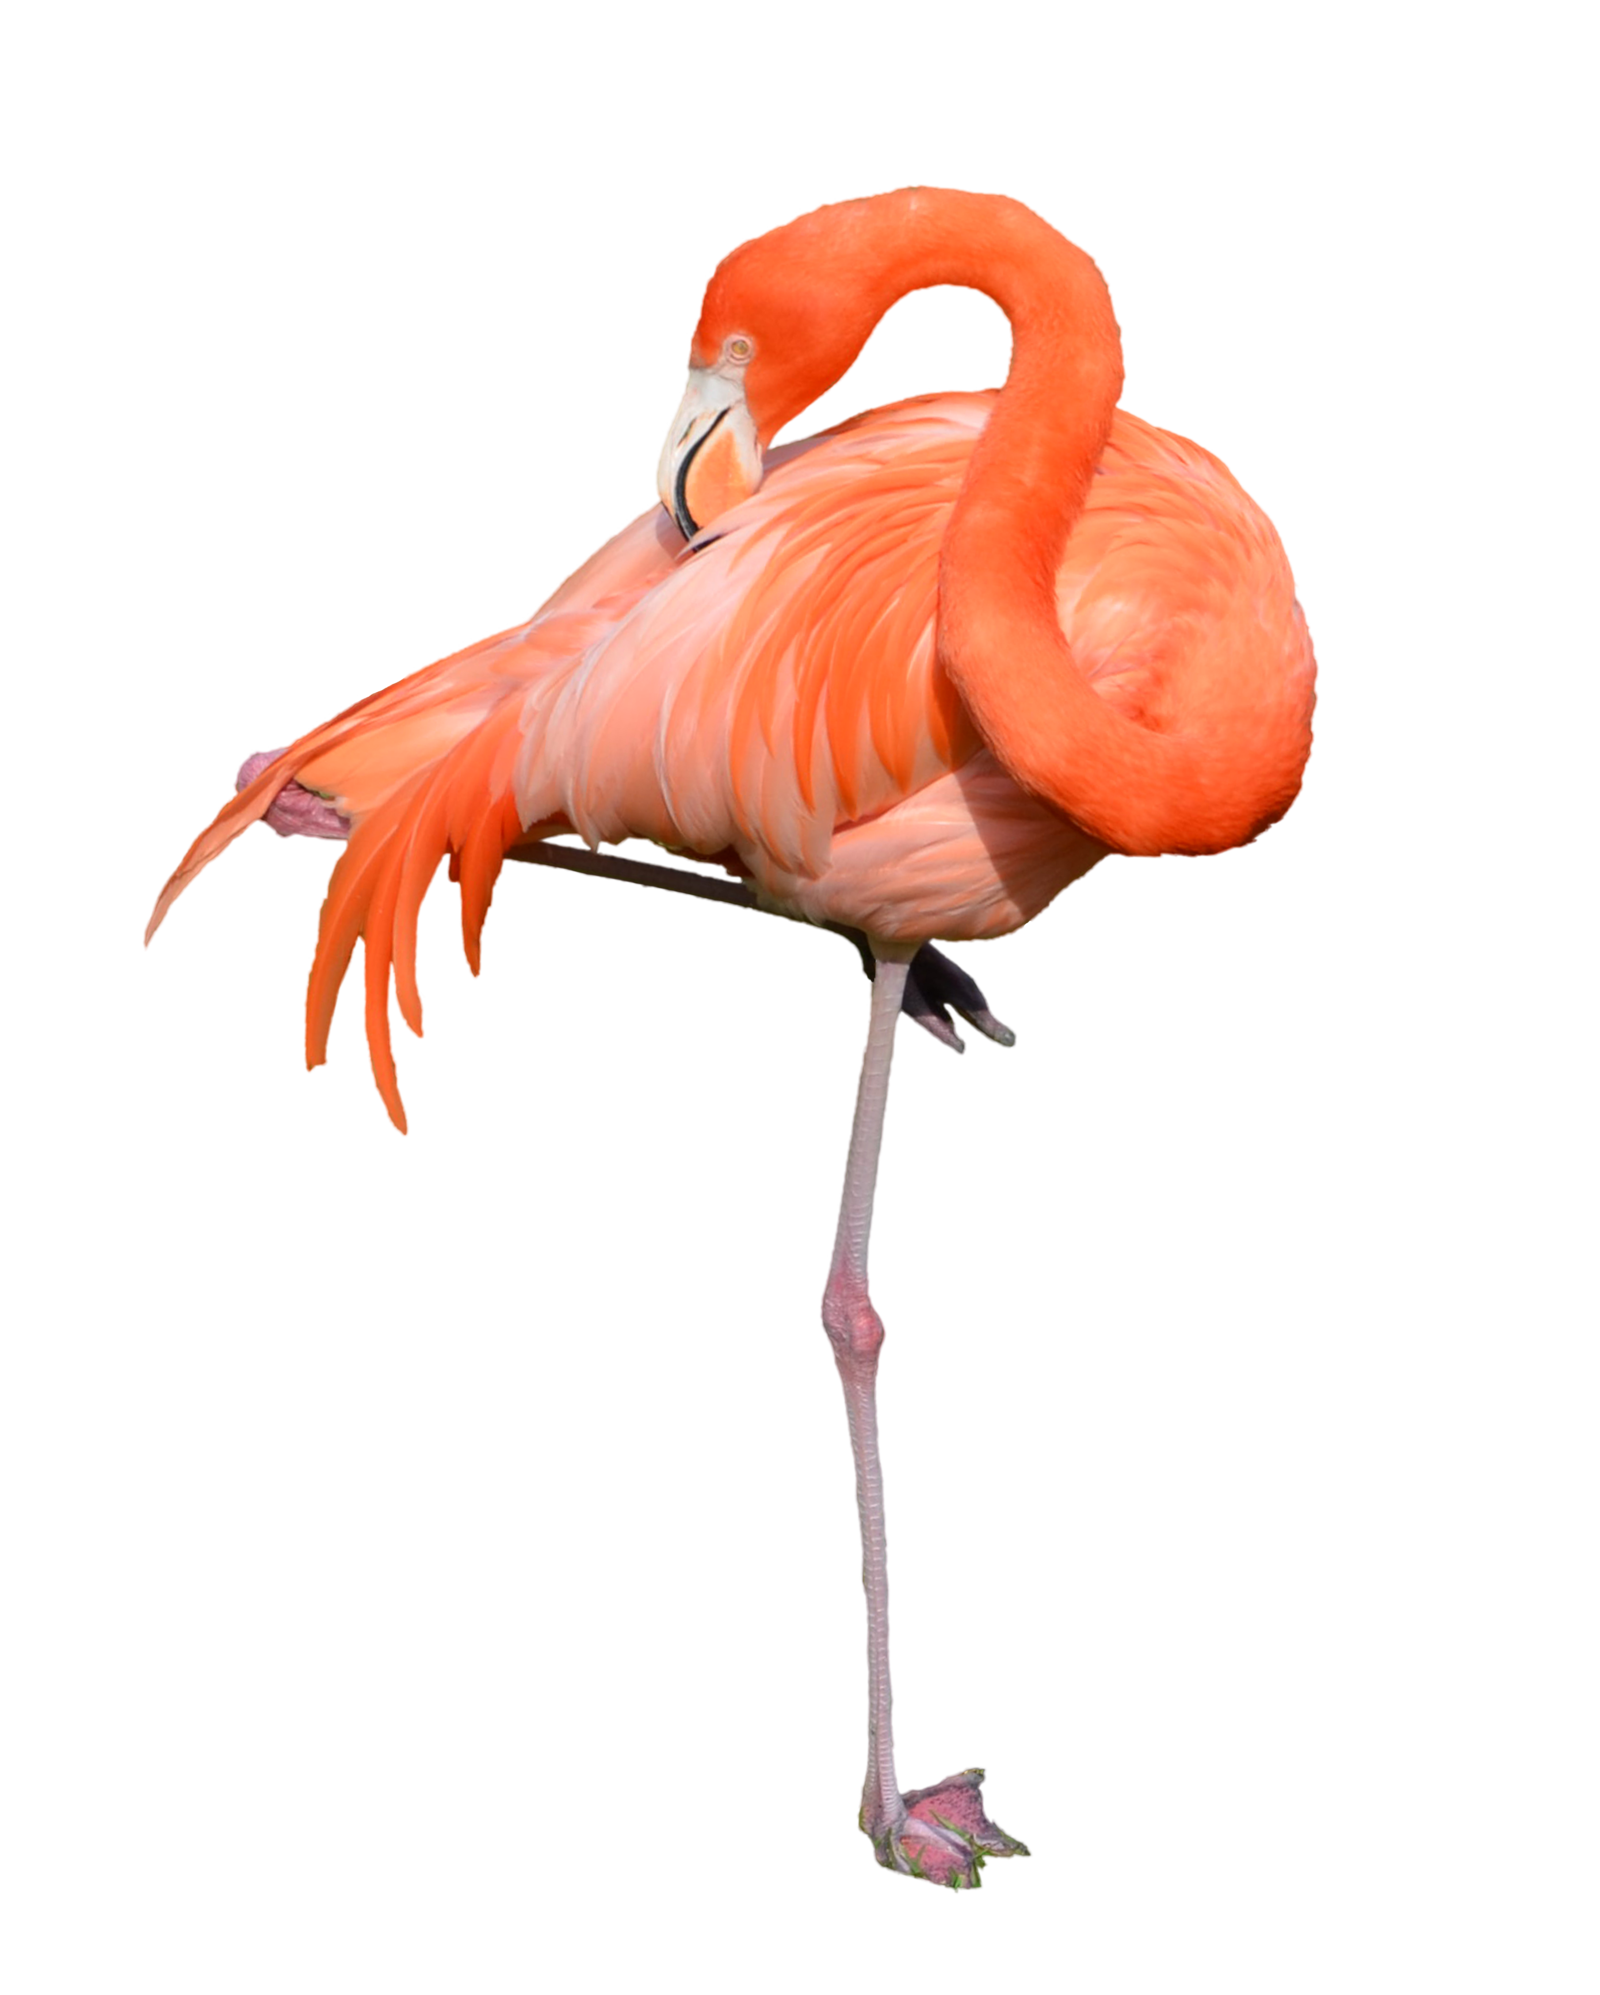 09.29.12 - Flamingo Classy (P